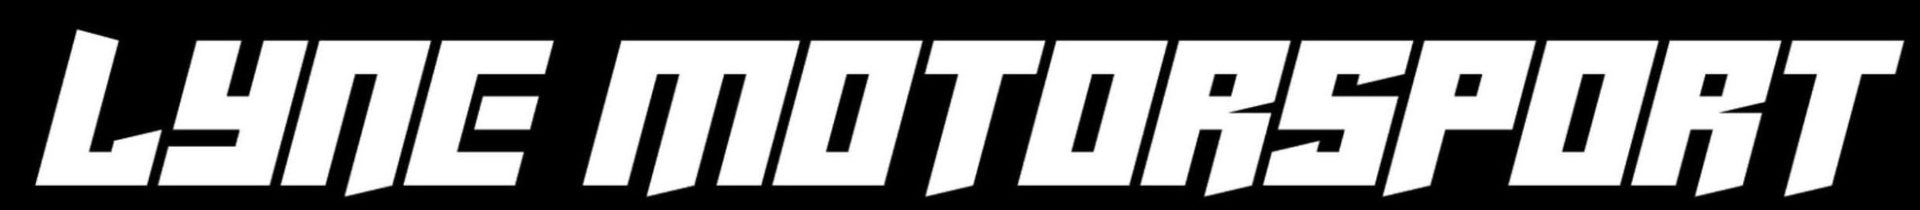 Lyne Motorsport Logo White Letters